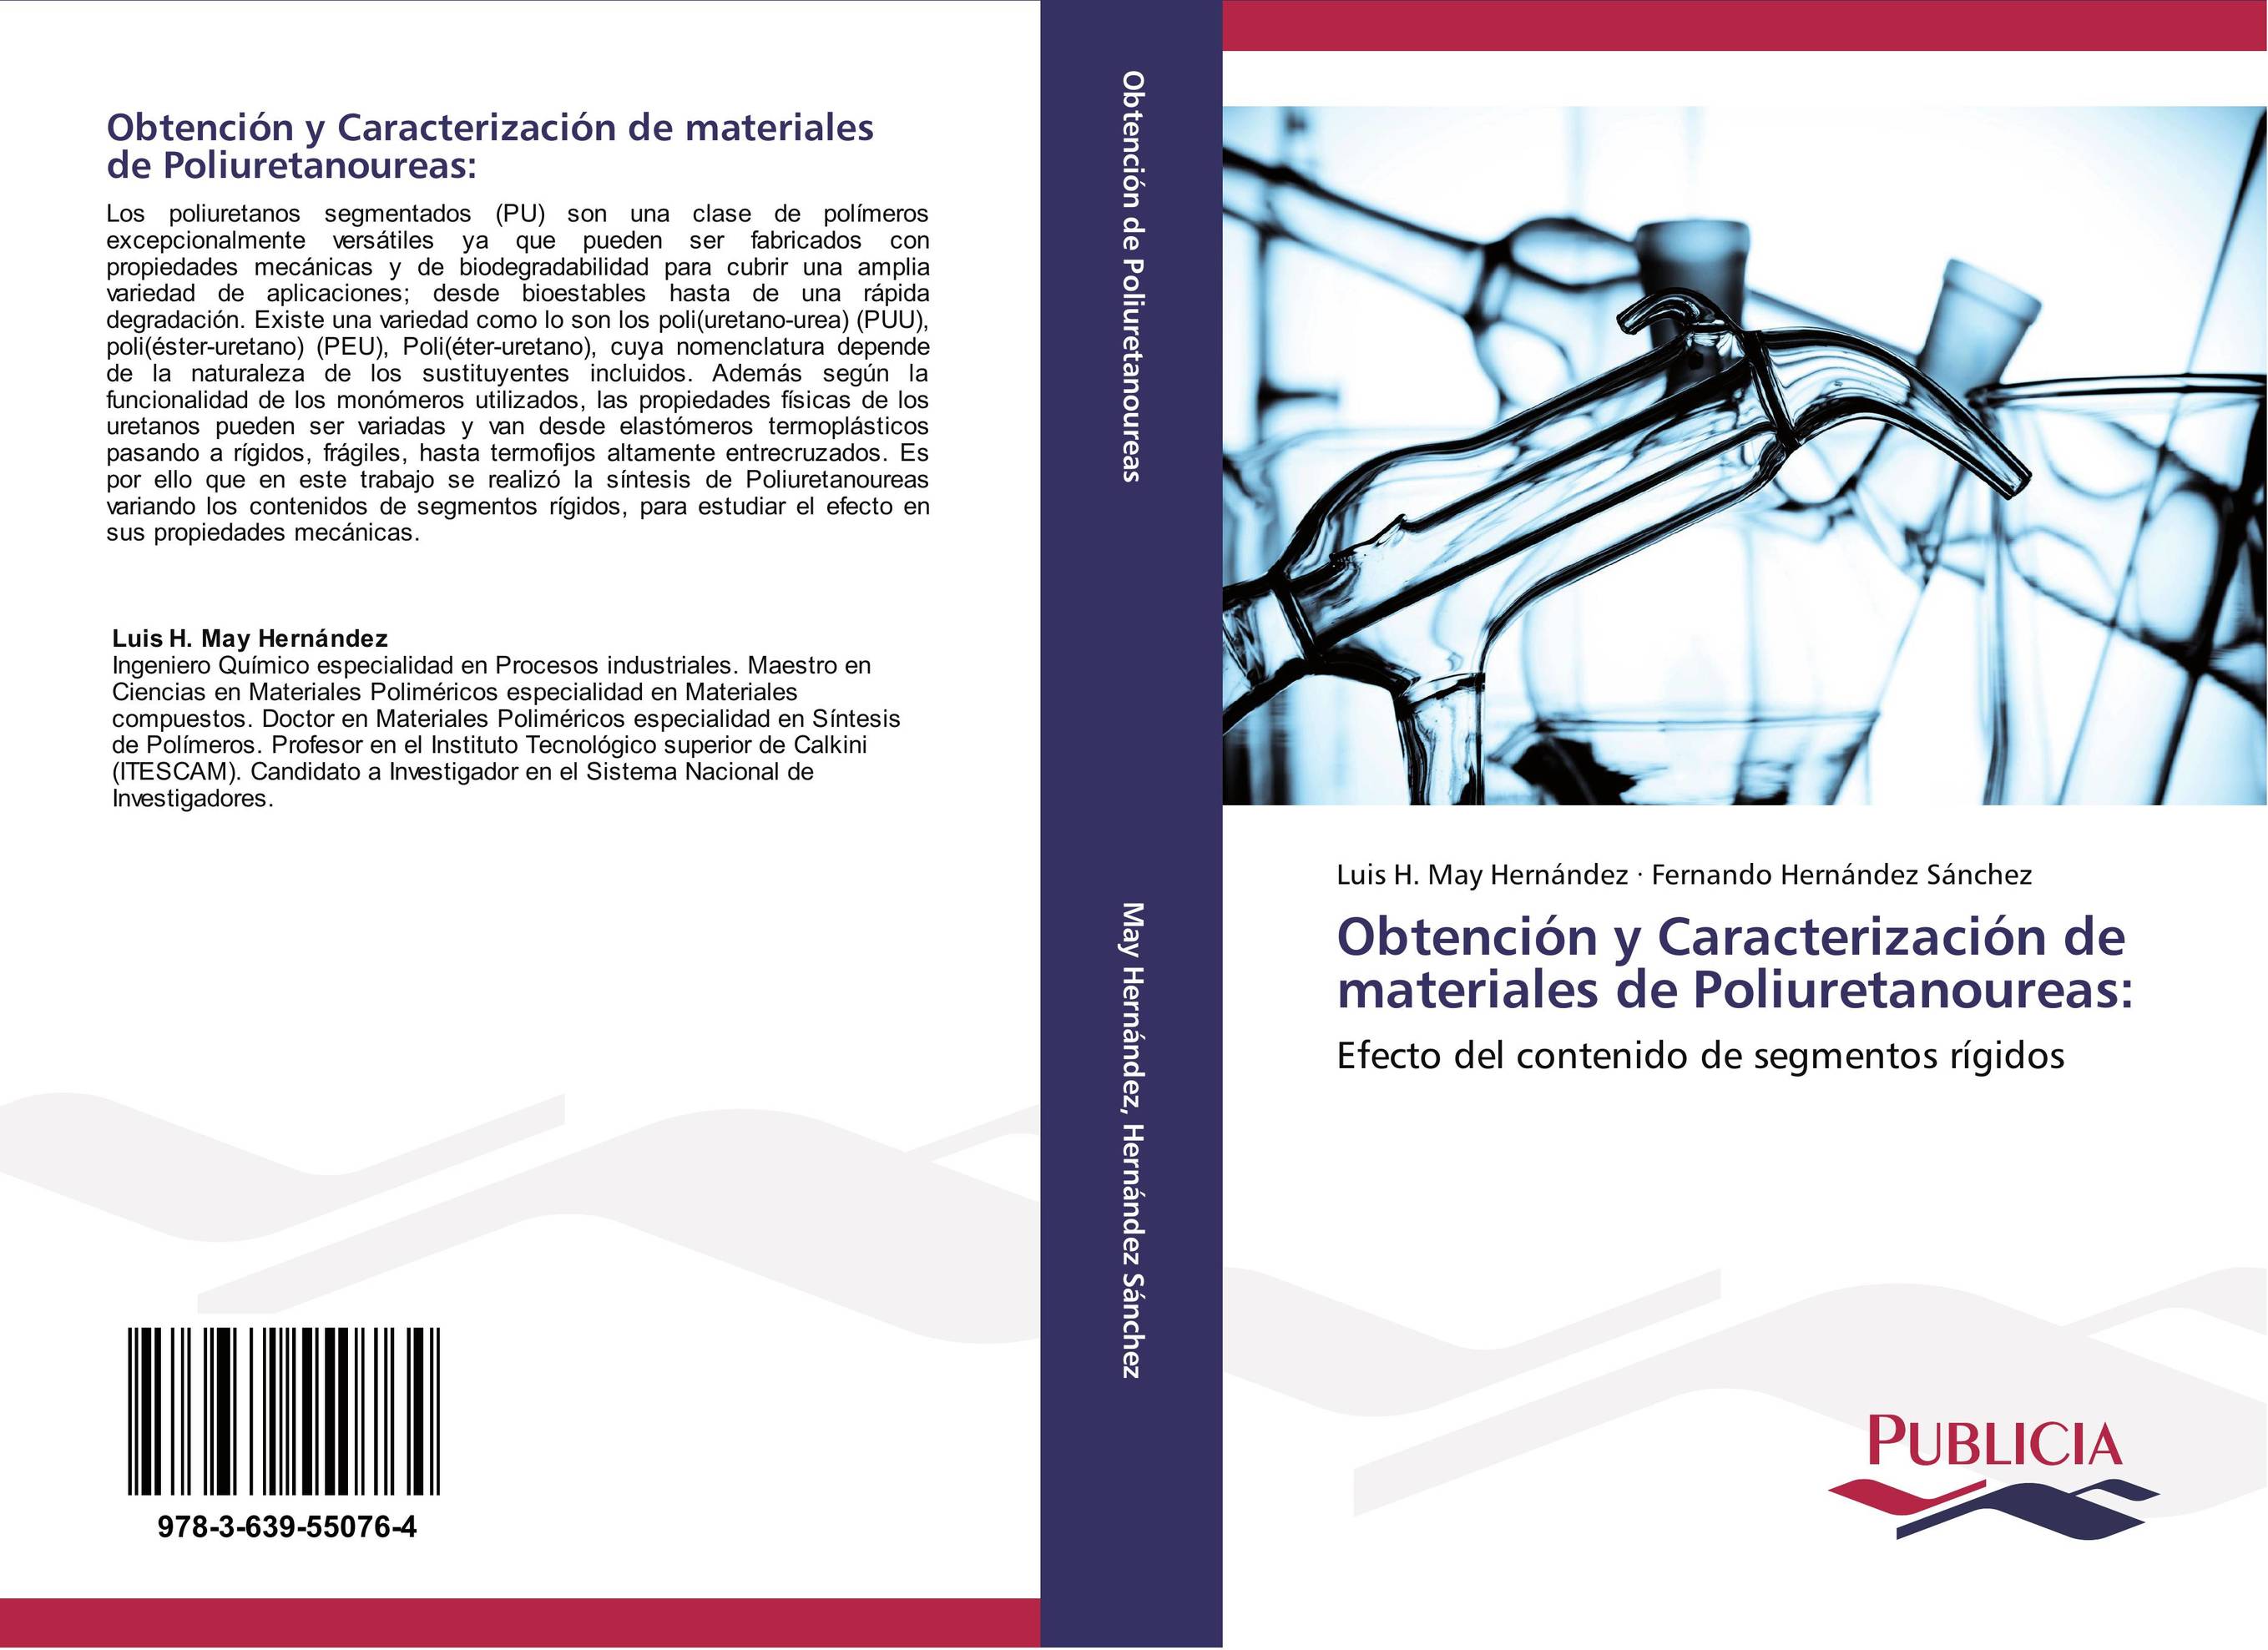 Obtención y Caracterización de materiales de Poliuretanoureas: